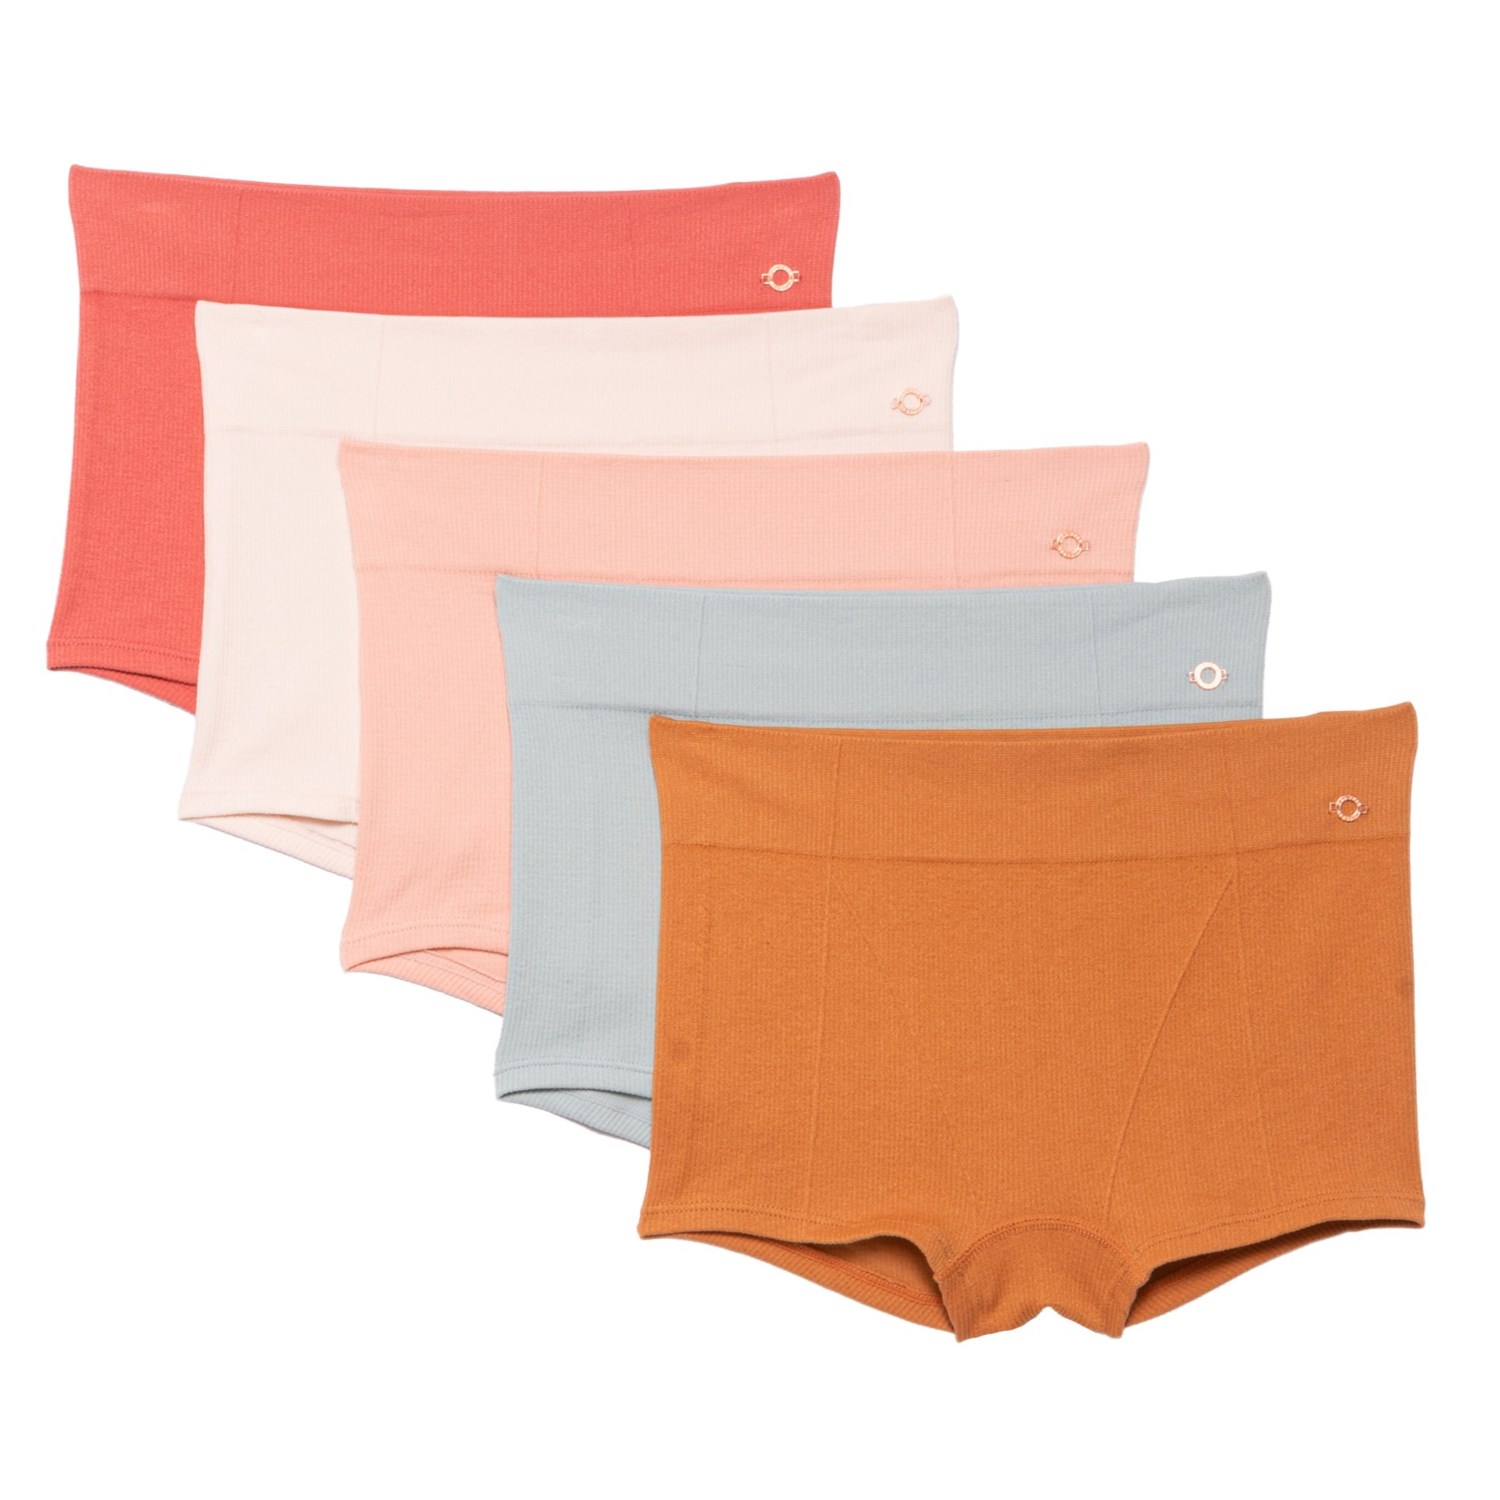 Danskin Seamless Ribbed Panties - 5-Pack, Boy Shorts - Save 64%